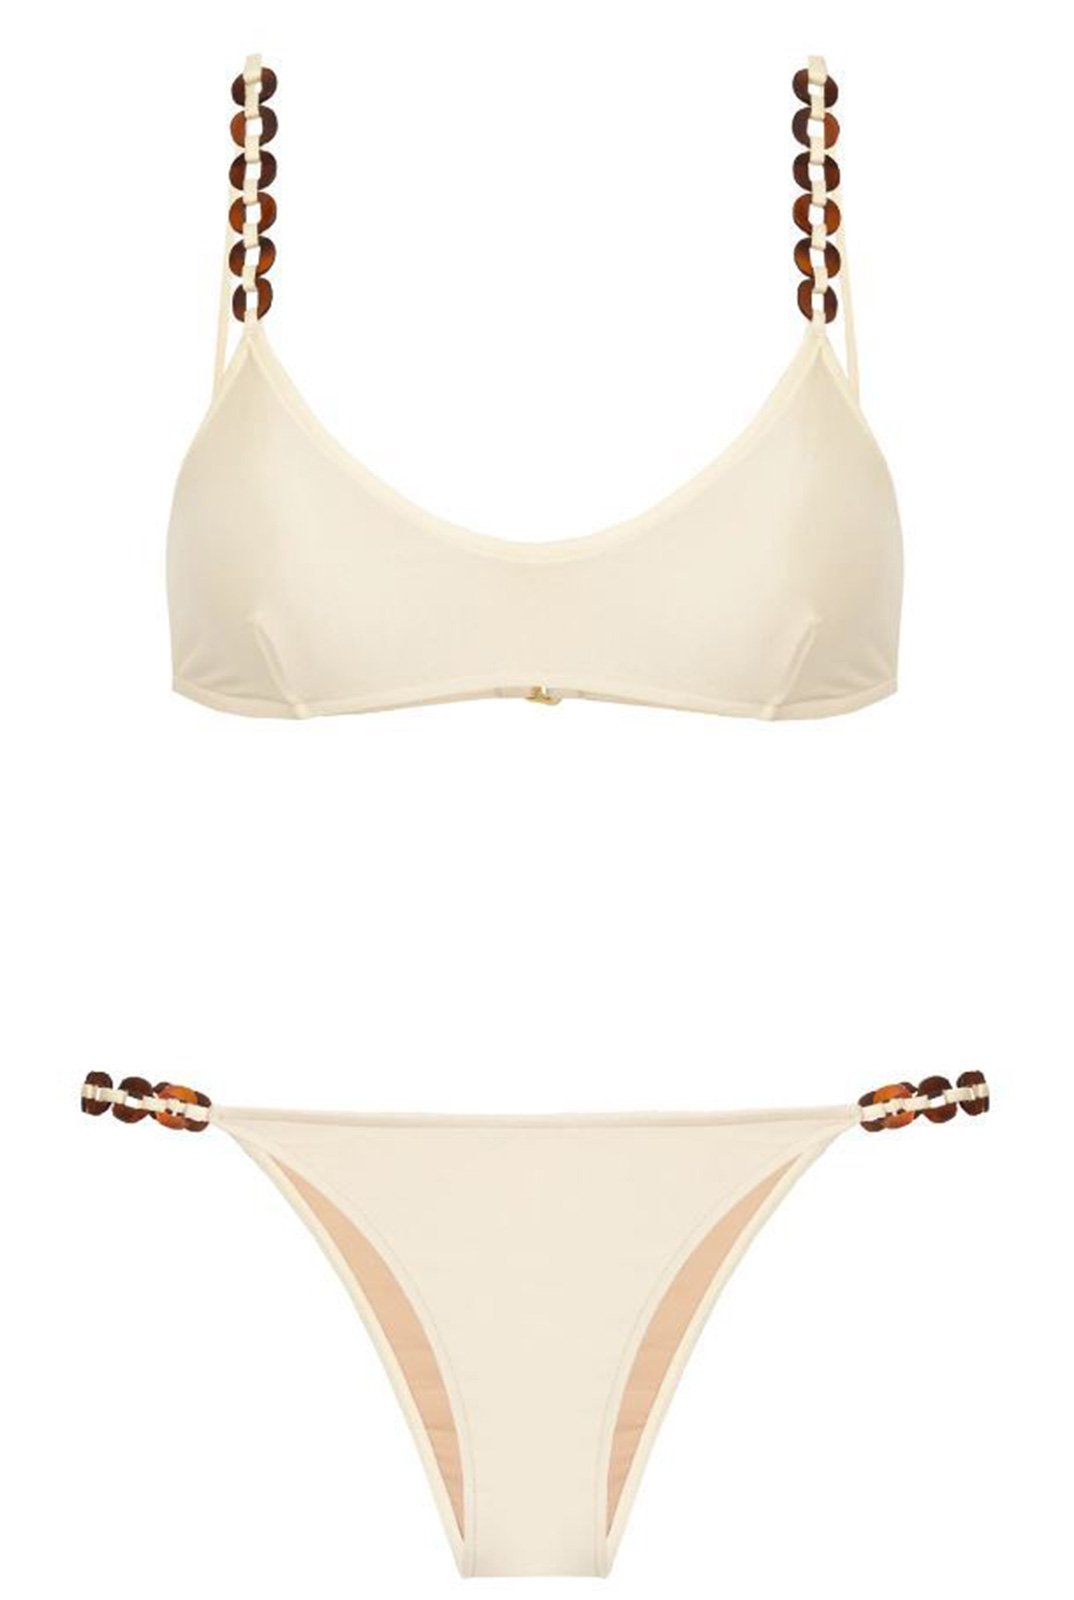 Luxurious Off White Accessorized Retro Style Bralette Bikini Chain